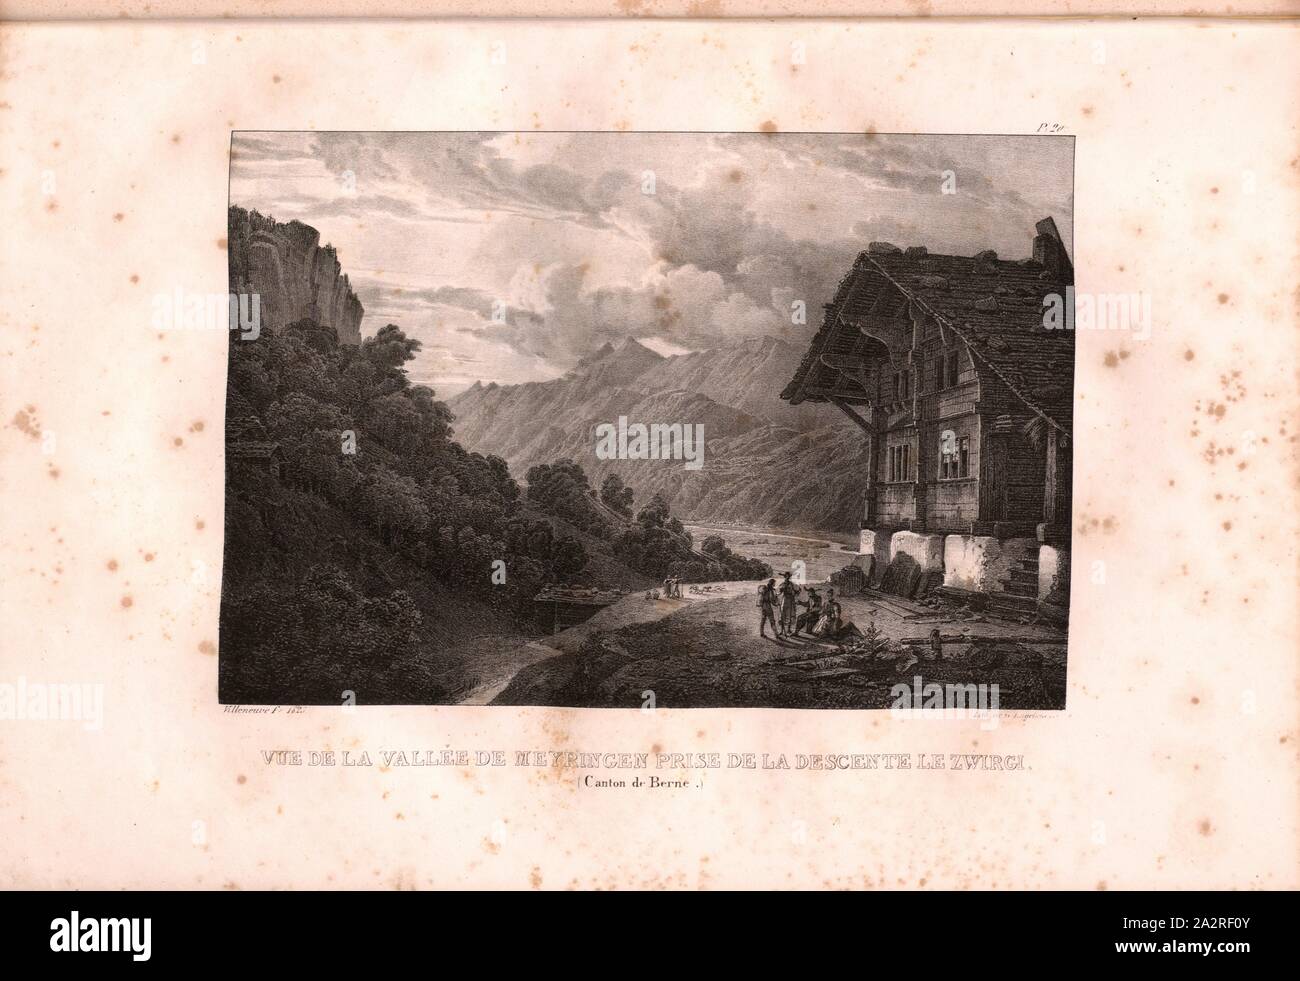 View of the Meiringen valley taken from the Zwirgi descent, Haslital and Gasthaus Zwirgi, Signed: Villeneuve, G. Engelmann, lithograph, pl. 20 (vol. 1, part 1), Villeneuve, M. (ft.); Engelmann, Godefroy (lith.), 1823, Hilaire Léon Sazerac, Godefroy Engelmann: Lettres sur la Suisse (...). Paris: [s.n.], 1823-1832 Stock Photo